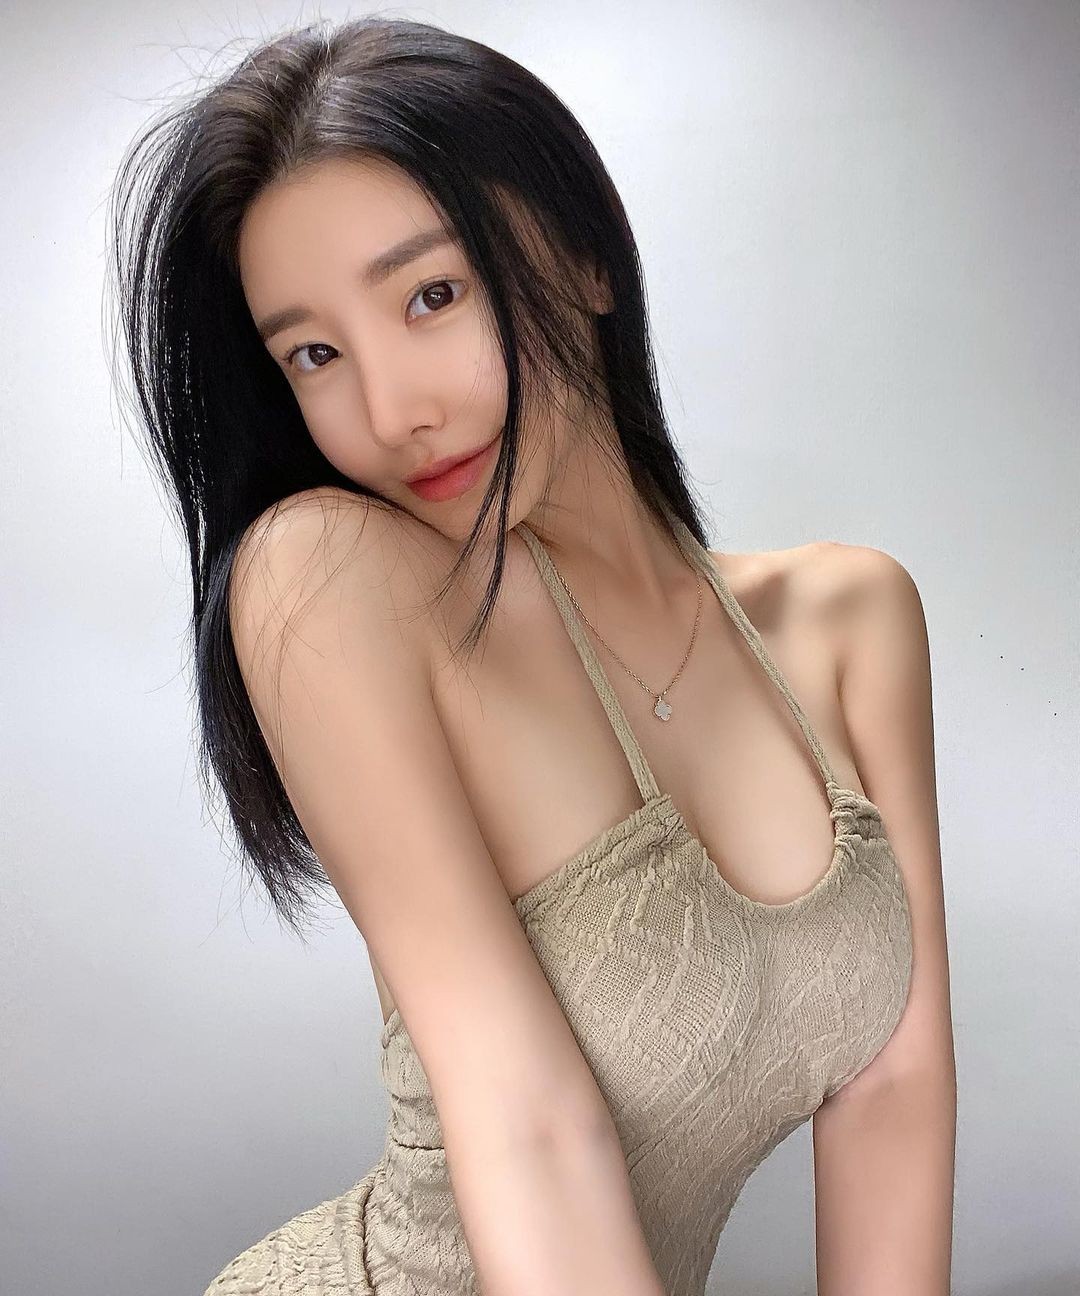 韩国清纯美女이재福利图欣赏 吊带背心下的好身材